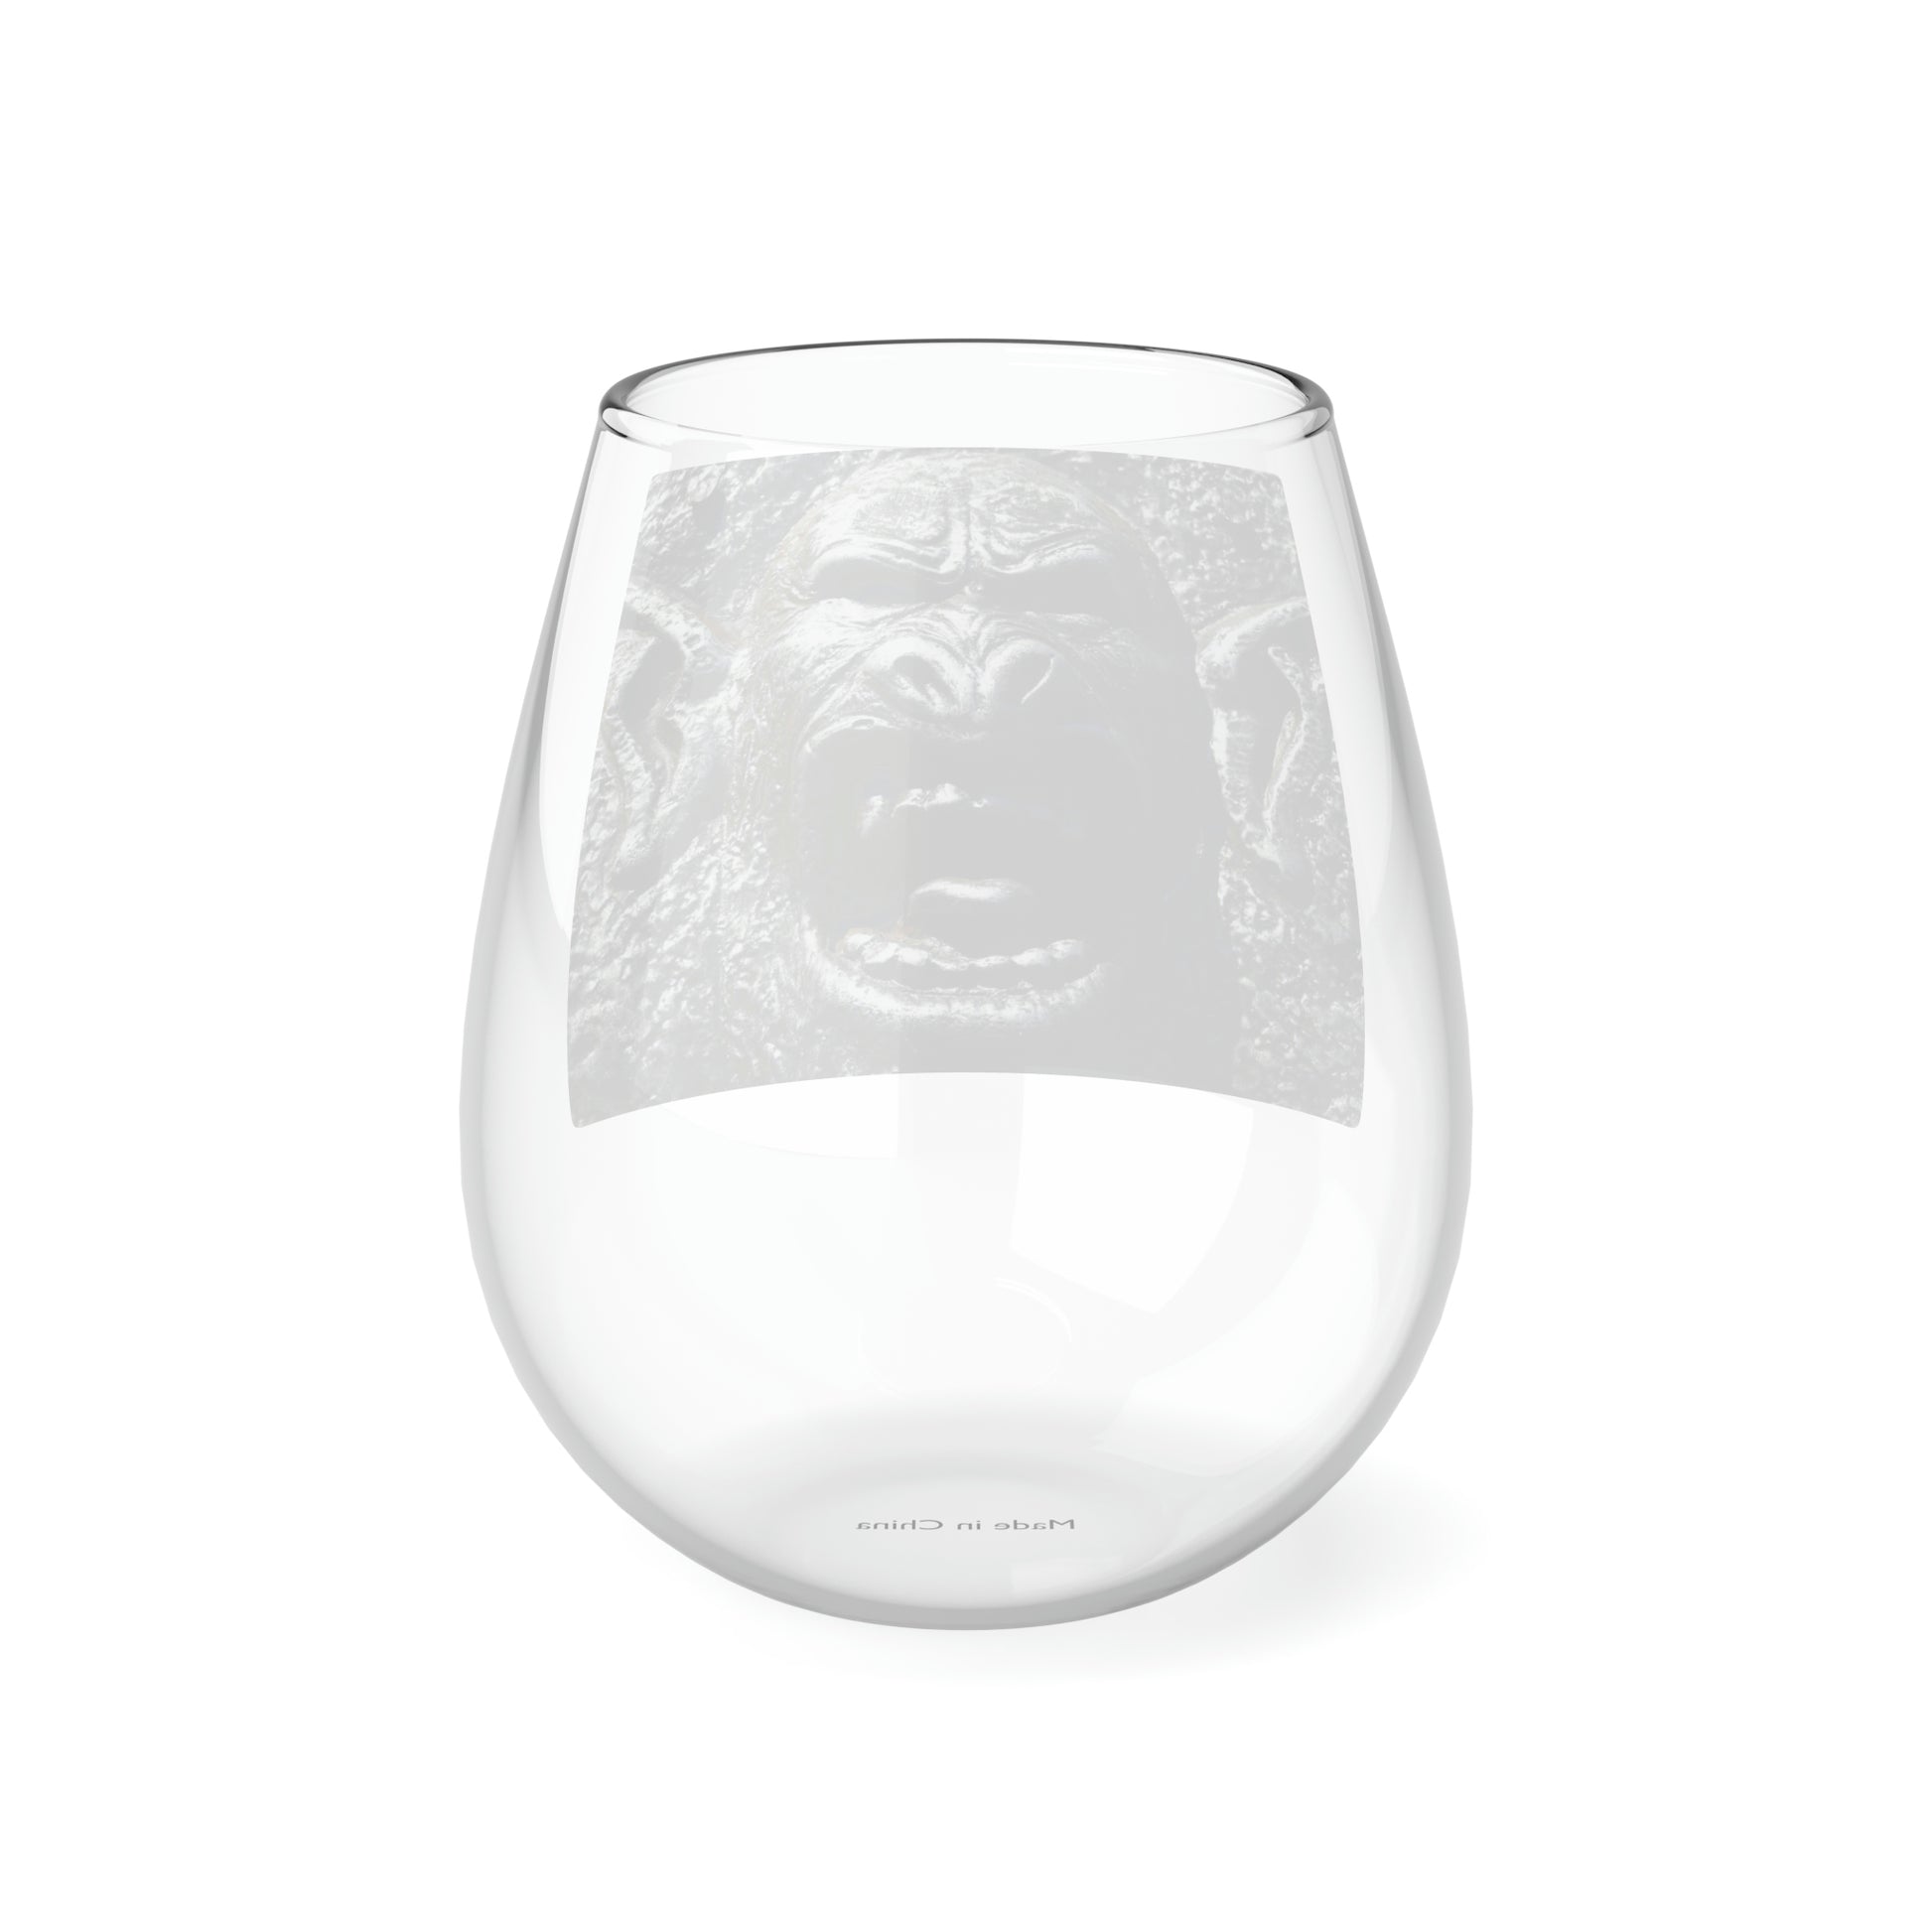 Frenzy Scream - Stemless Wine Glass, 11.75 oz - Fry1Productions